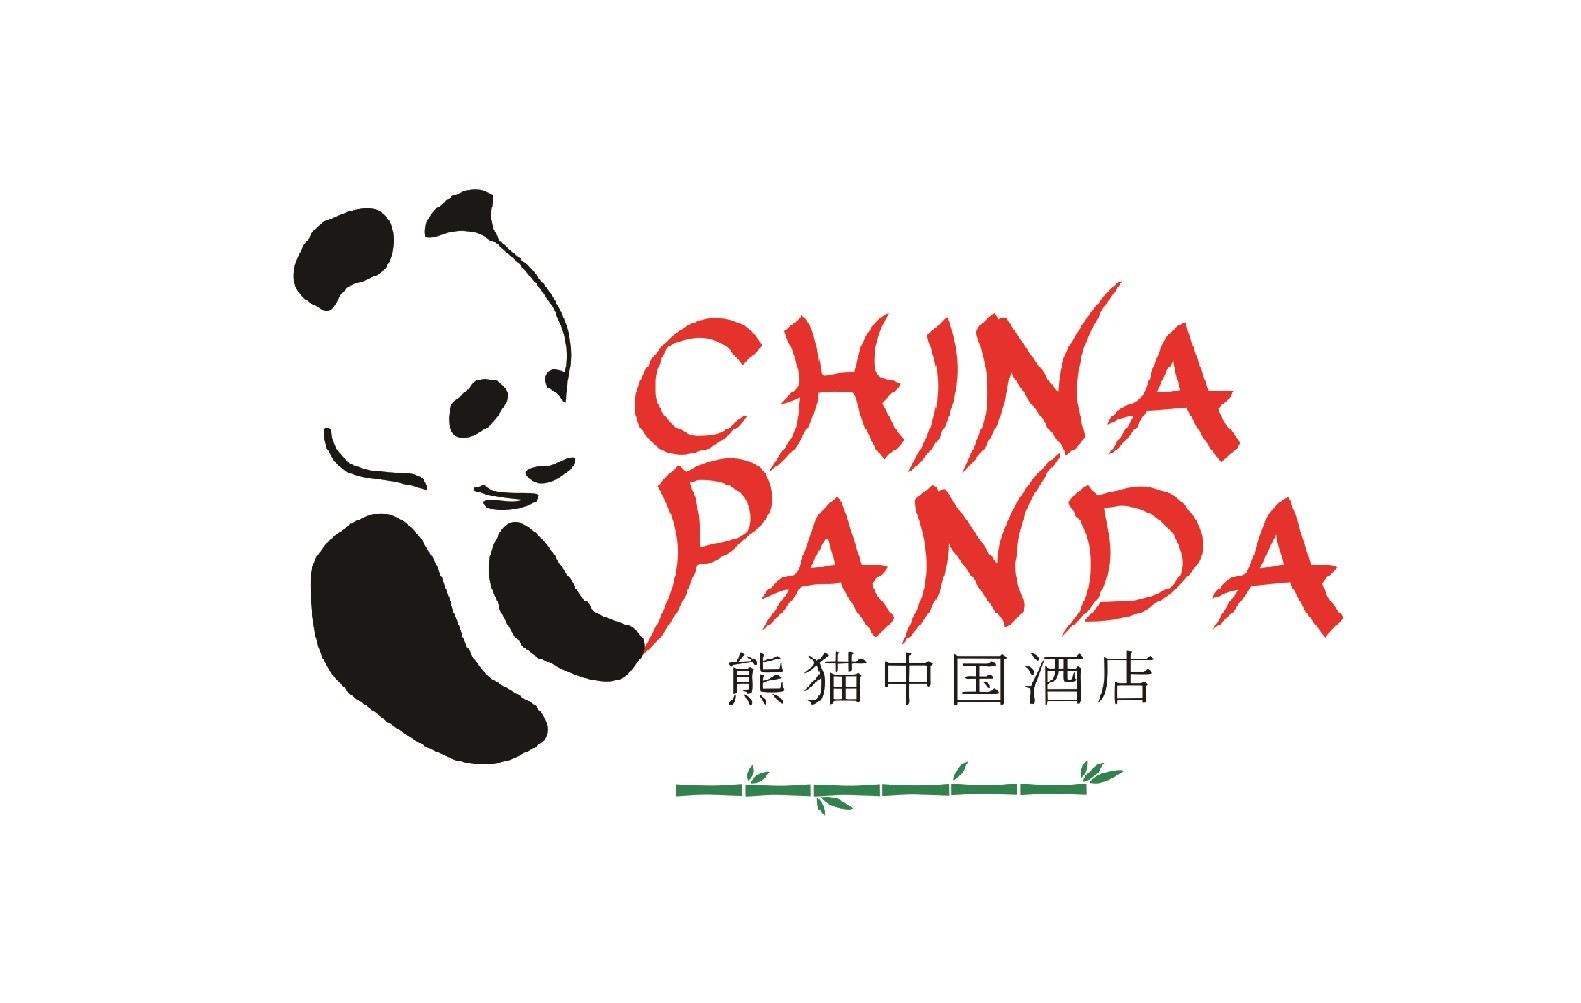 China Panda Restaurant